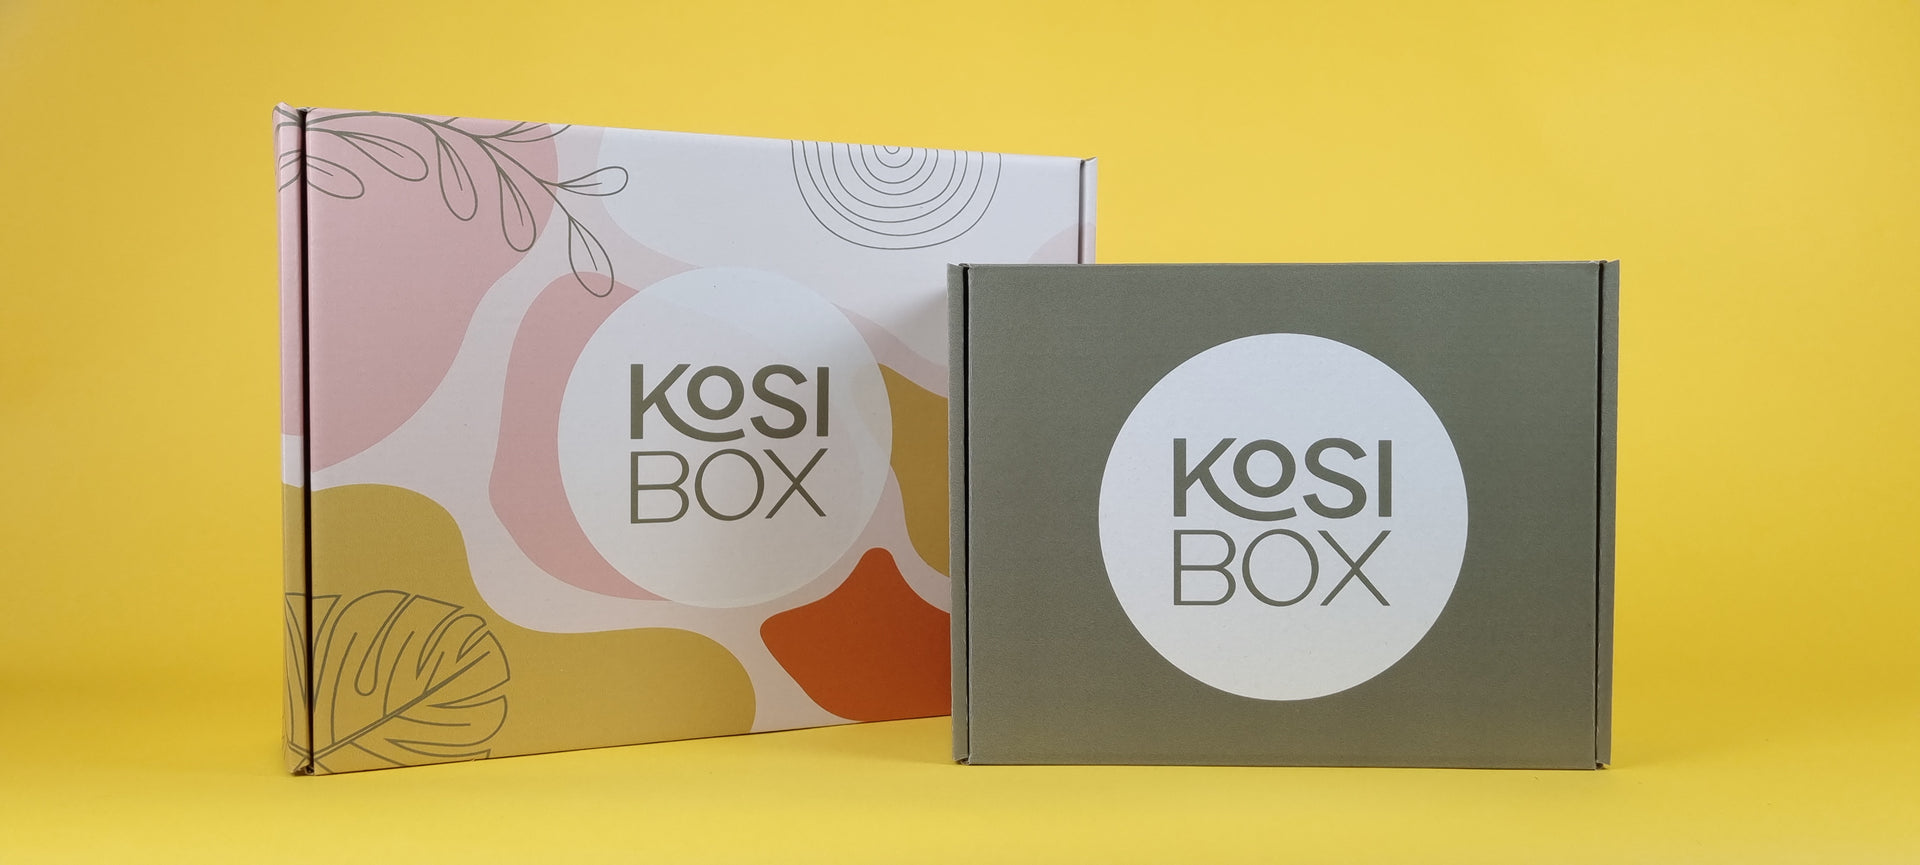 Last inn video: Den här videon visar dig prototypen av vår första miljövänliga presentförpackning för kosibox